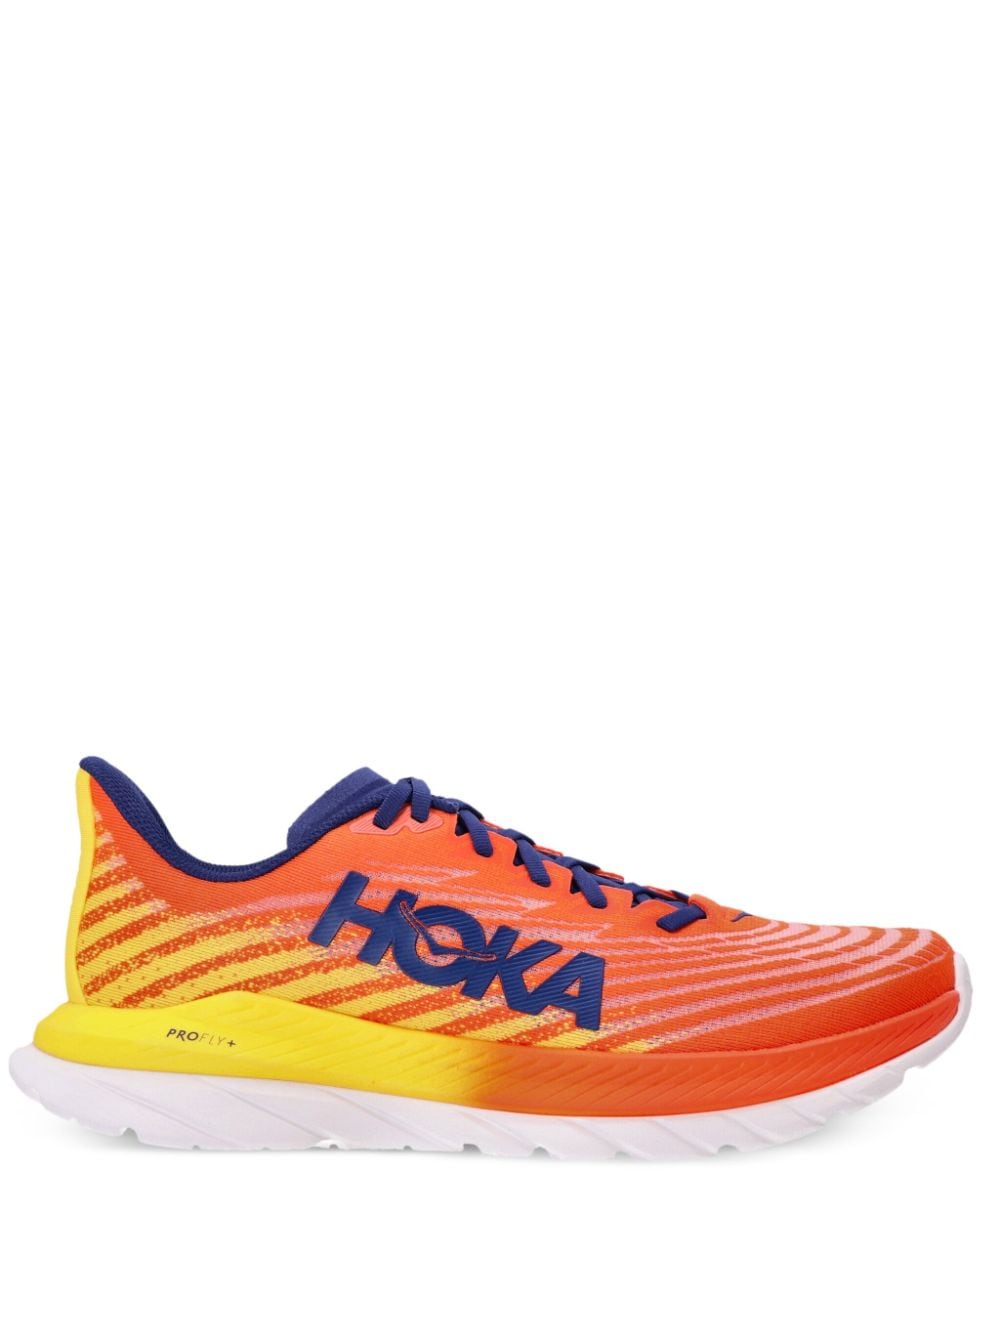 Hoka Mach 5 Low-top Sneakers In Orange